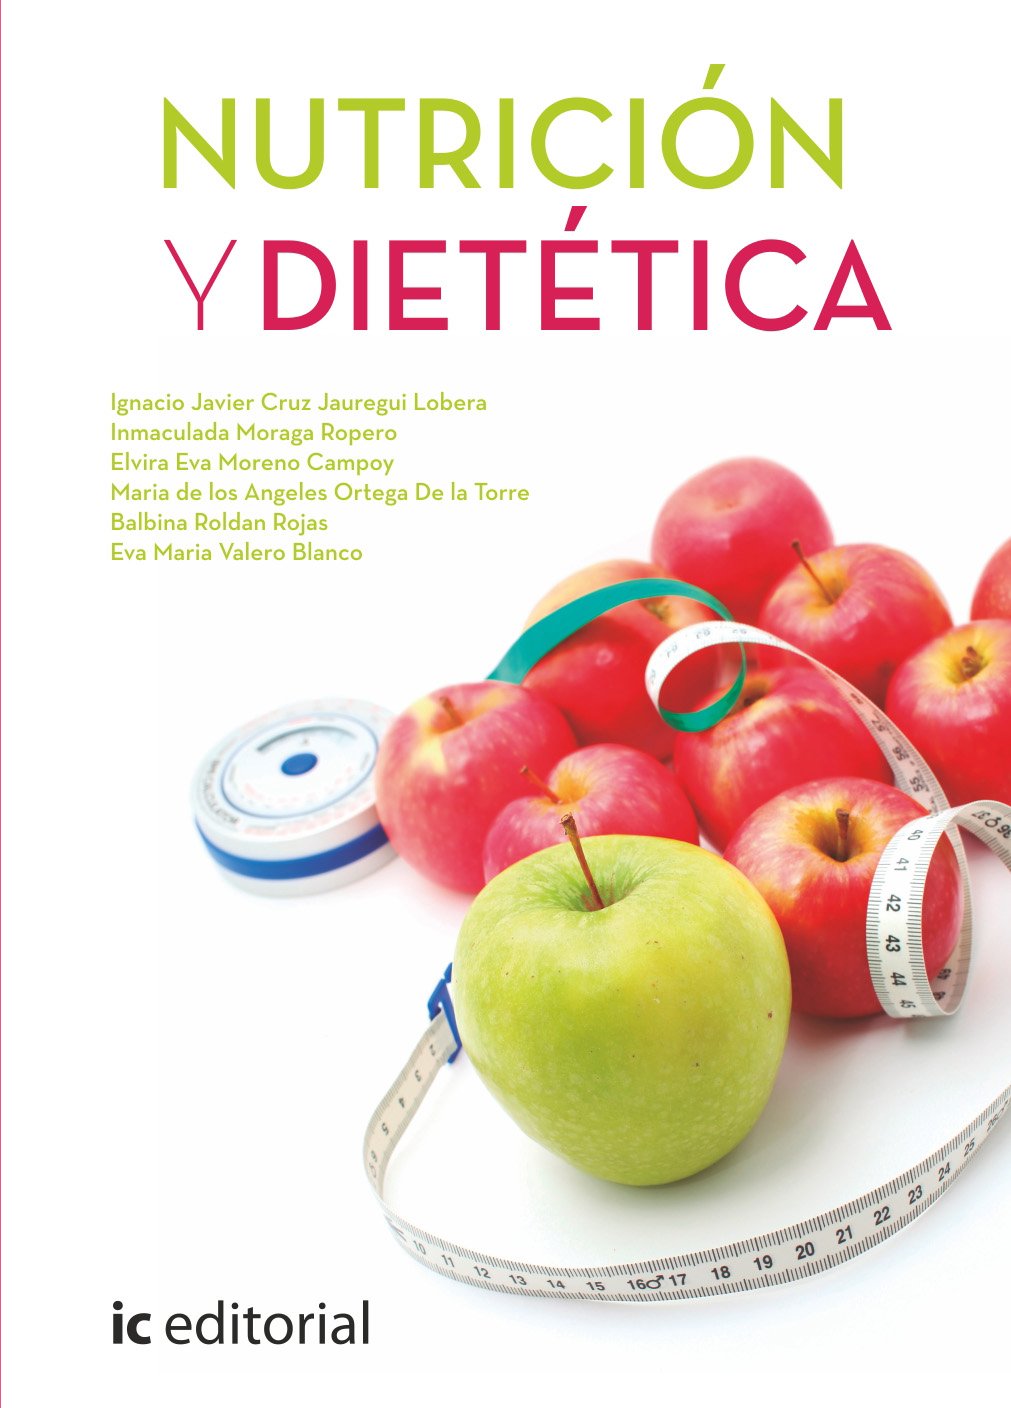 Imagen de portada del libro Nutrición dietética